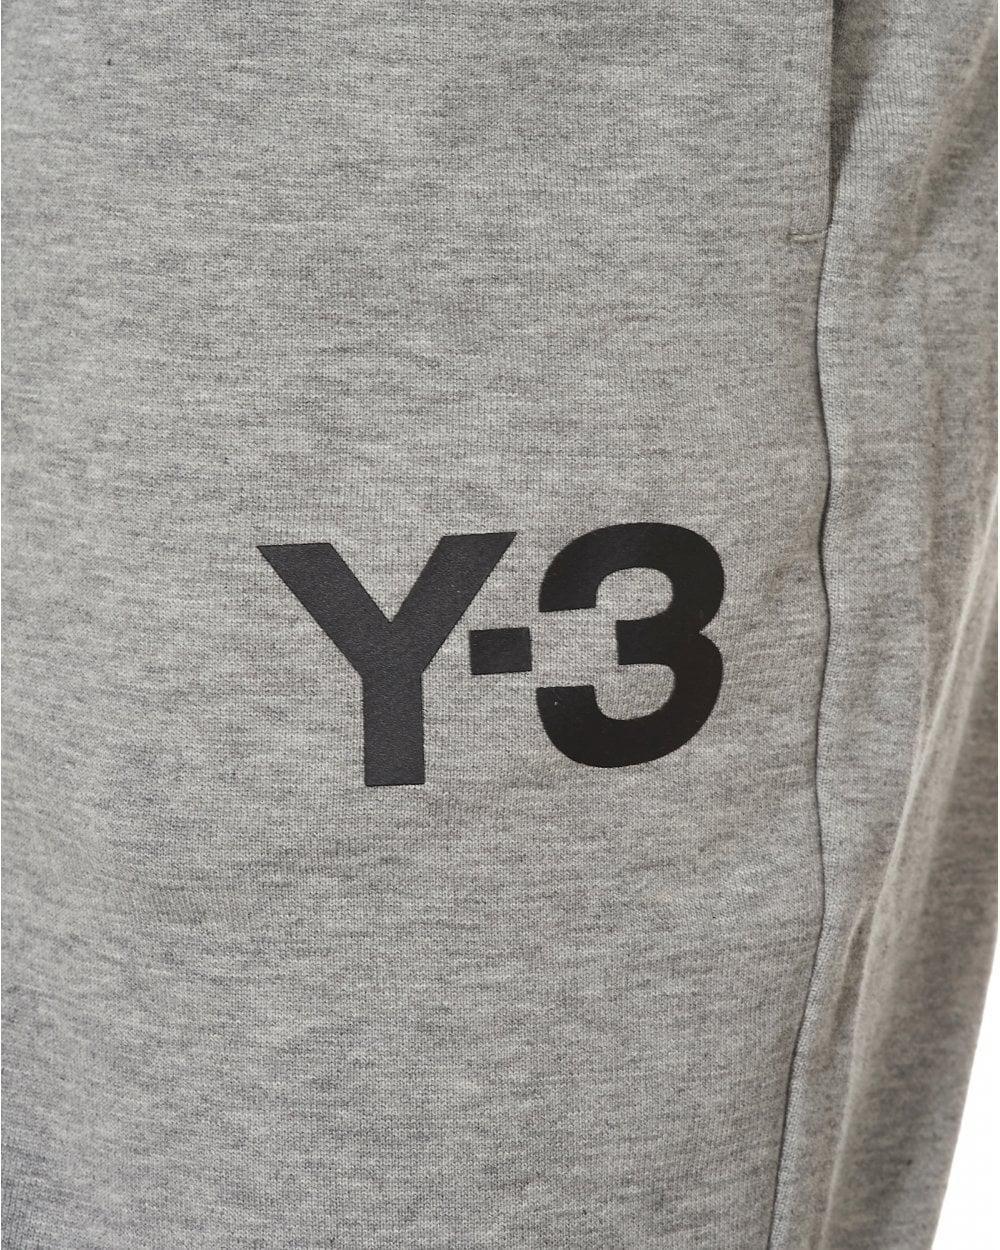 Black Y Logo - Y 3 Classic Black Logo Joggers, Grey Cuffed Sweatpants In Gray